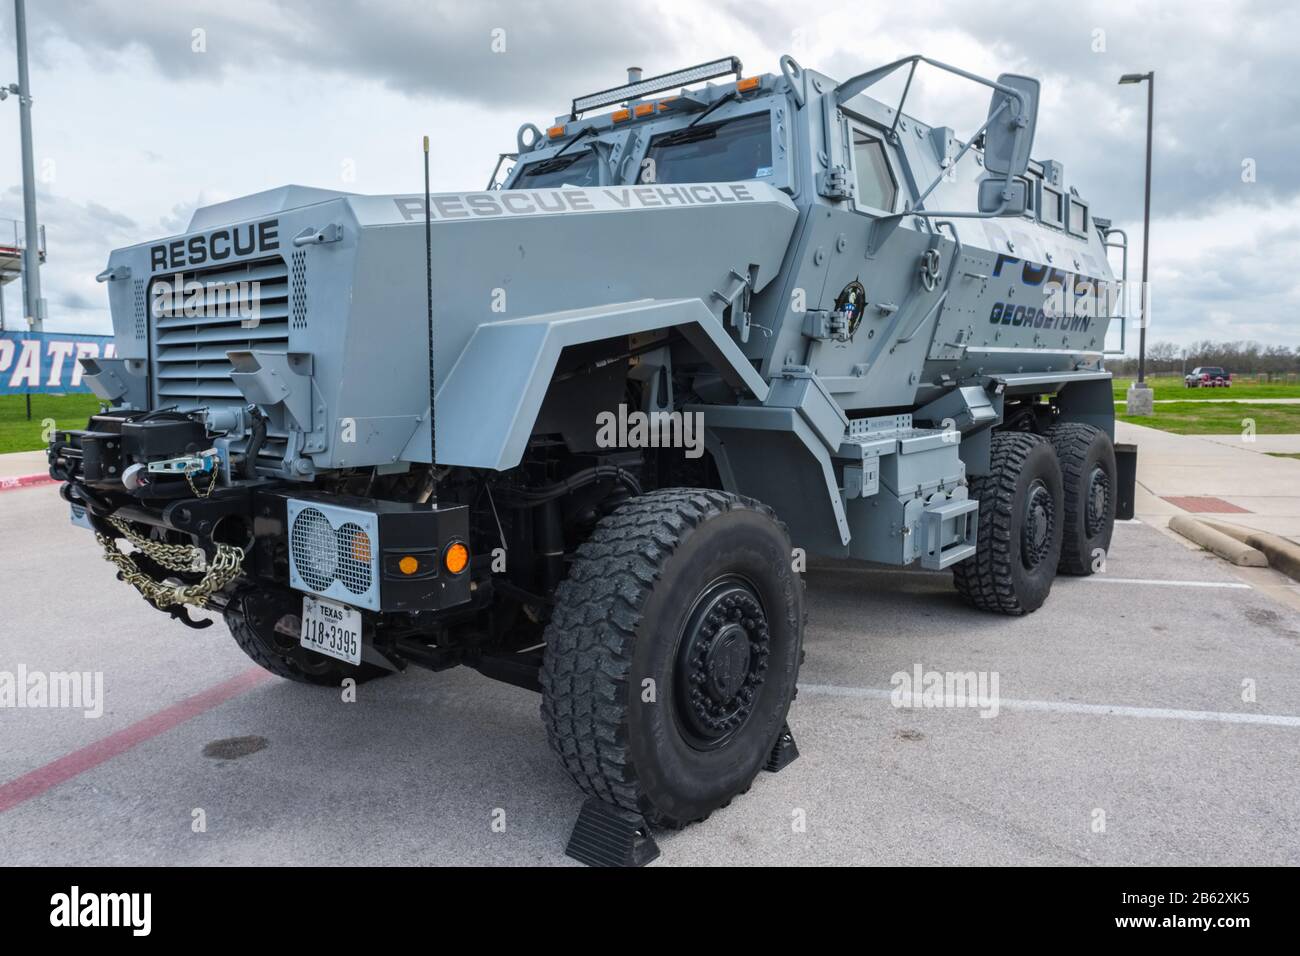 Vorderansicht des ehemaligen Militärfahrzeugs MRAP Mine-Resistant Ambush Protected Vehicle, das von der örtlichen Polizeibehörde als Rettungsfahrzeug verwendet wird Stockfoto